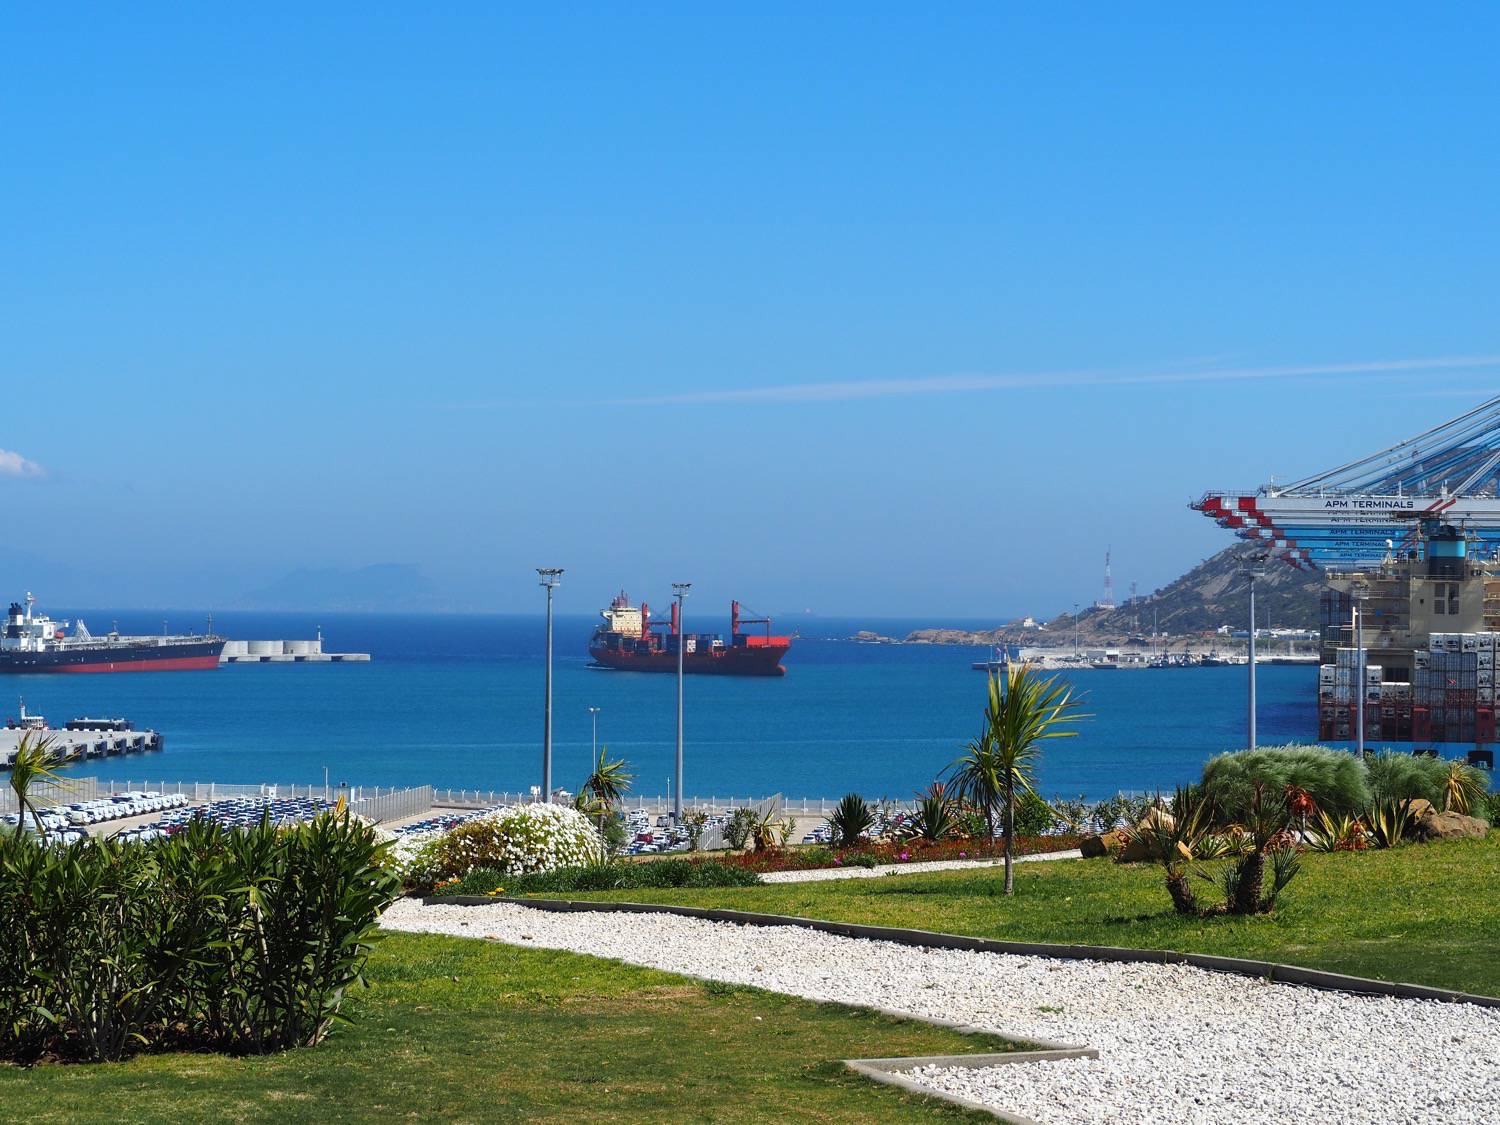 Tanger-Med Port